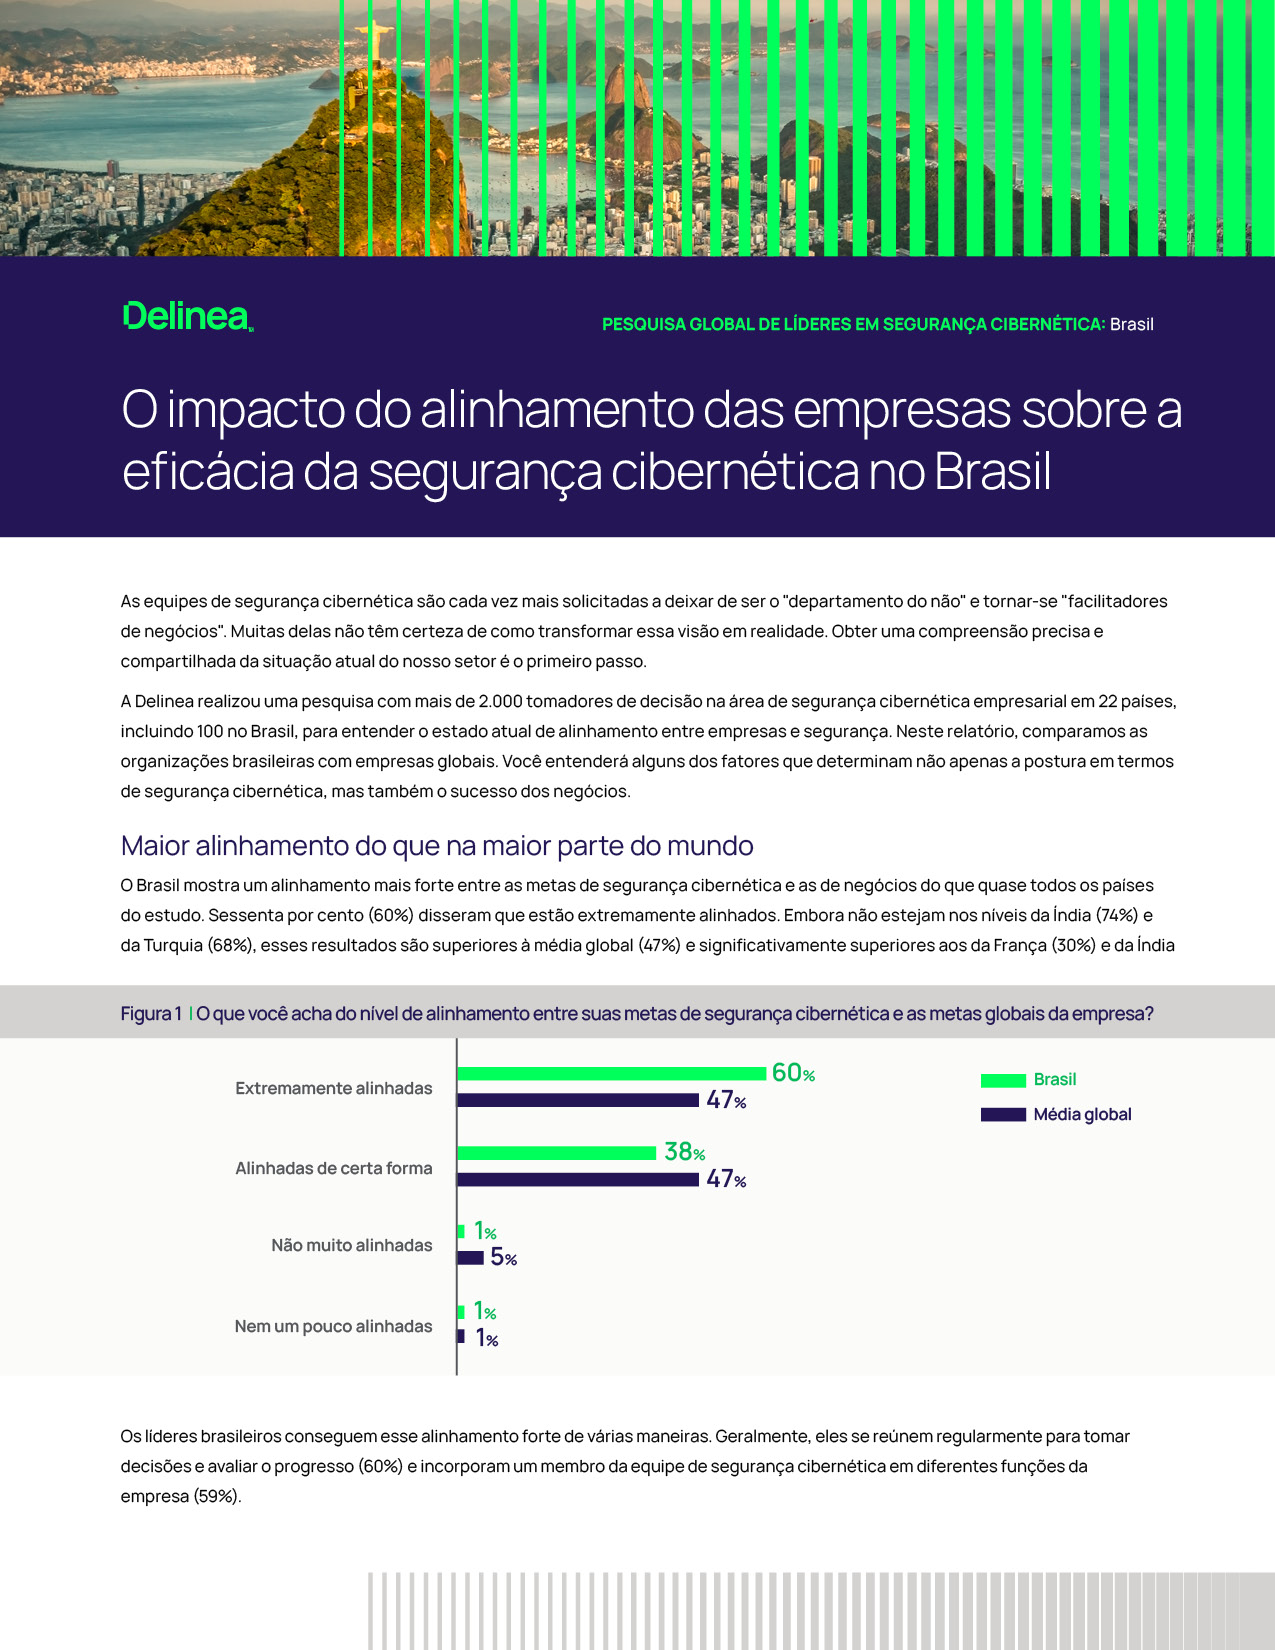 O impacto do alinhamento das empresas sobre a eficácia da segurança cibernética no Brasil